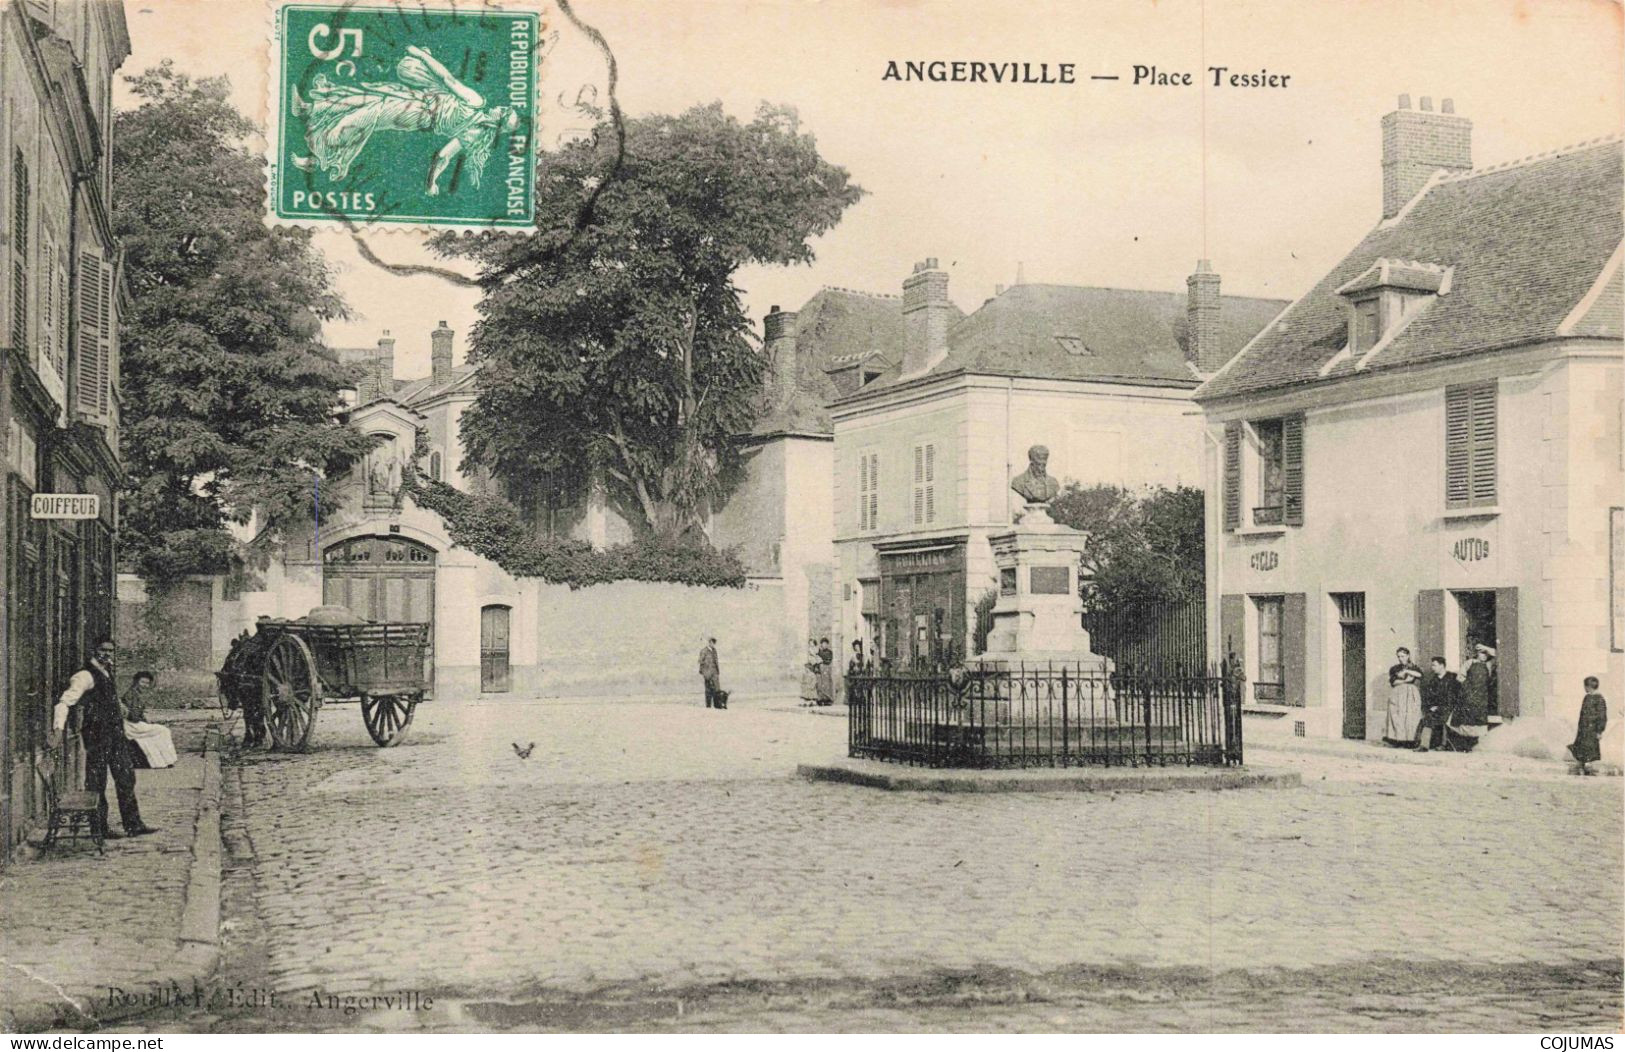 91 - ANGERVILLE - S21168 - Place Tessier - Coiffeur - Angerville